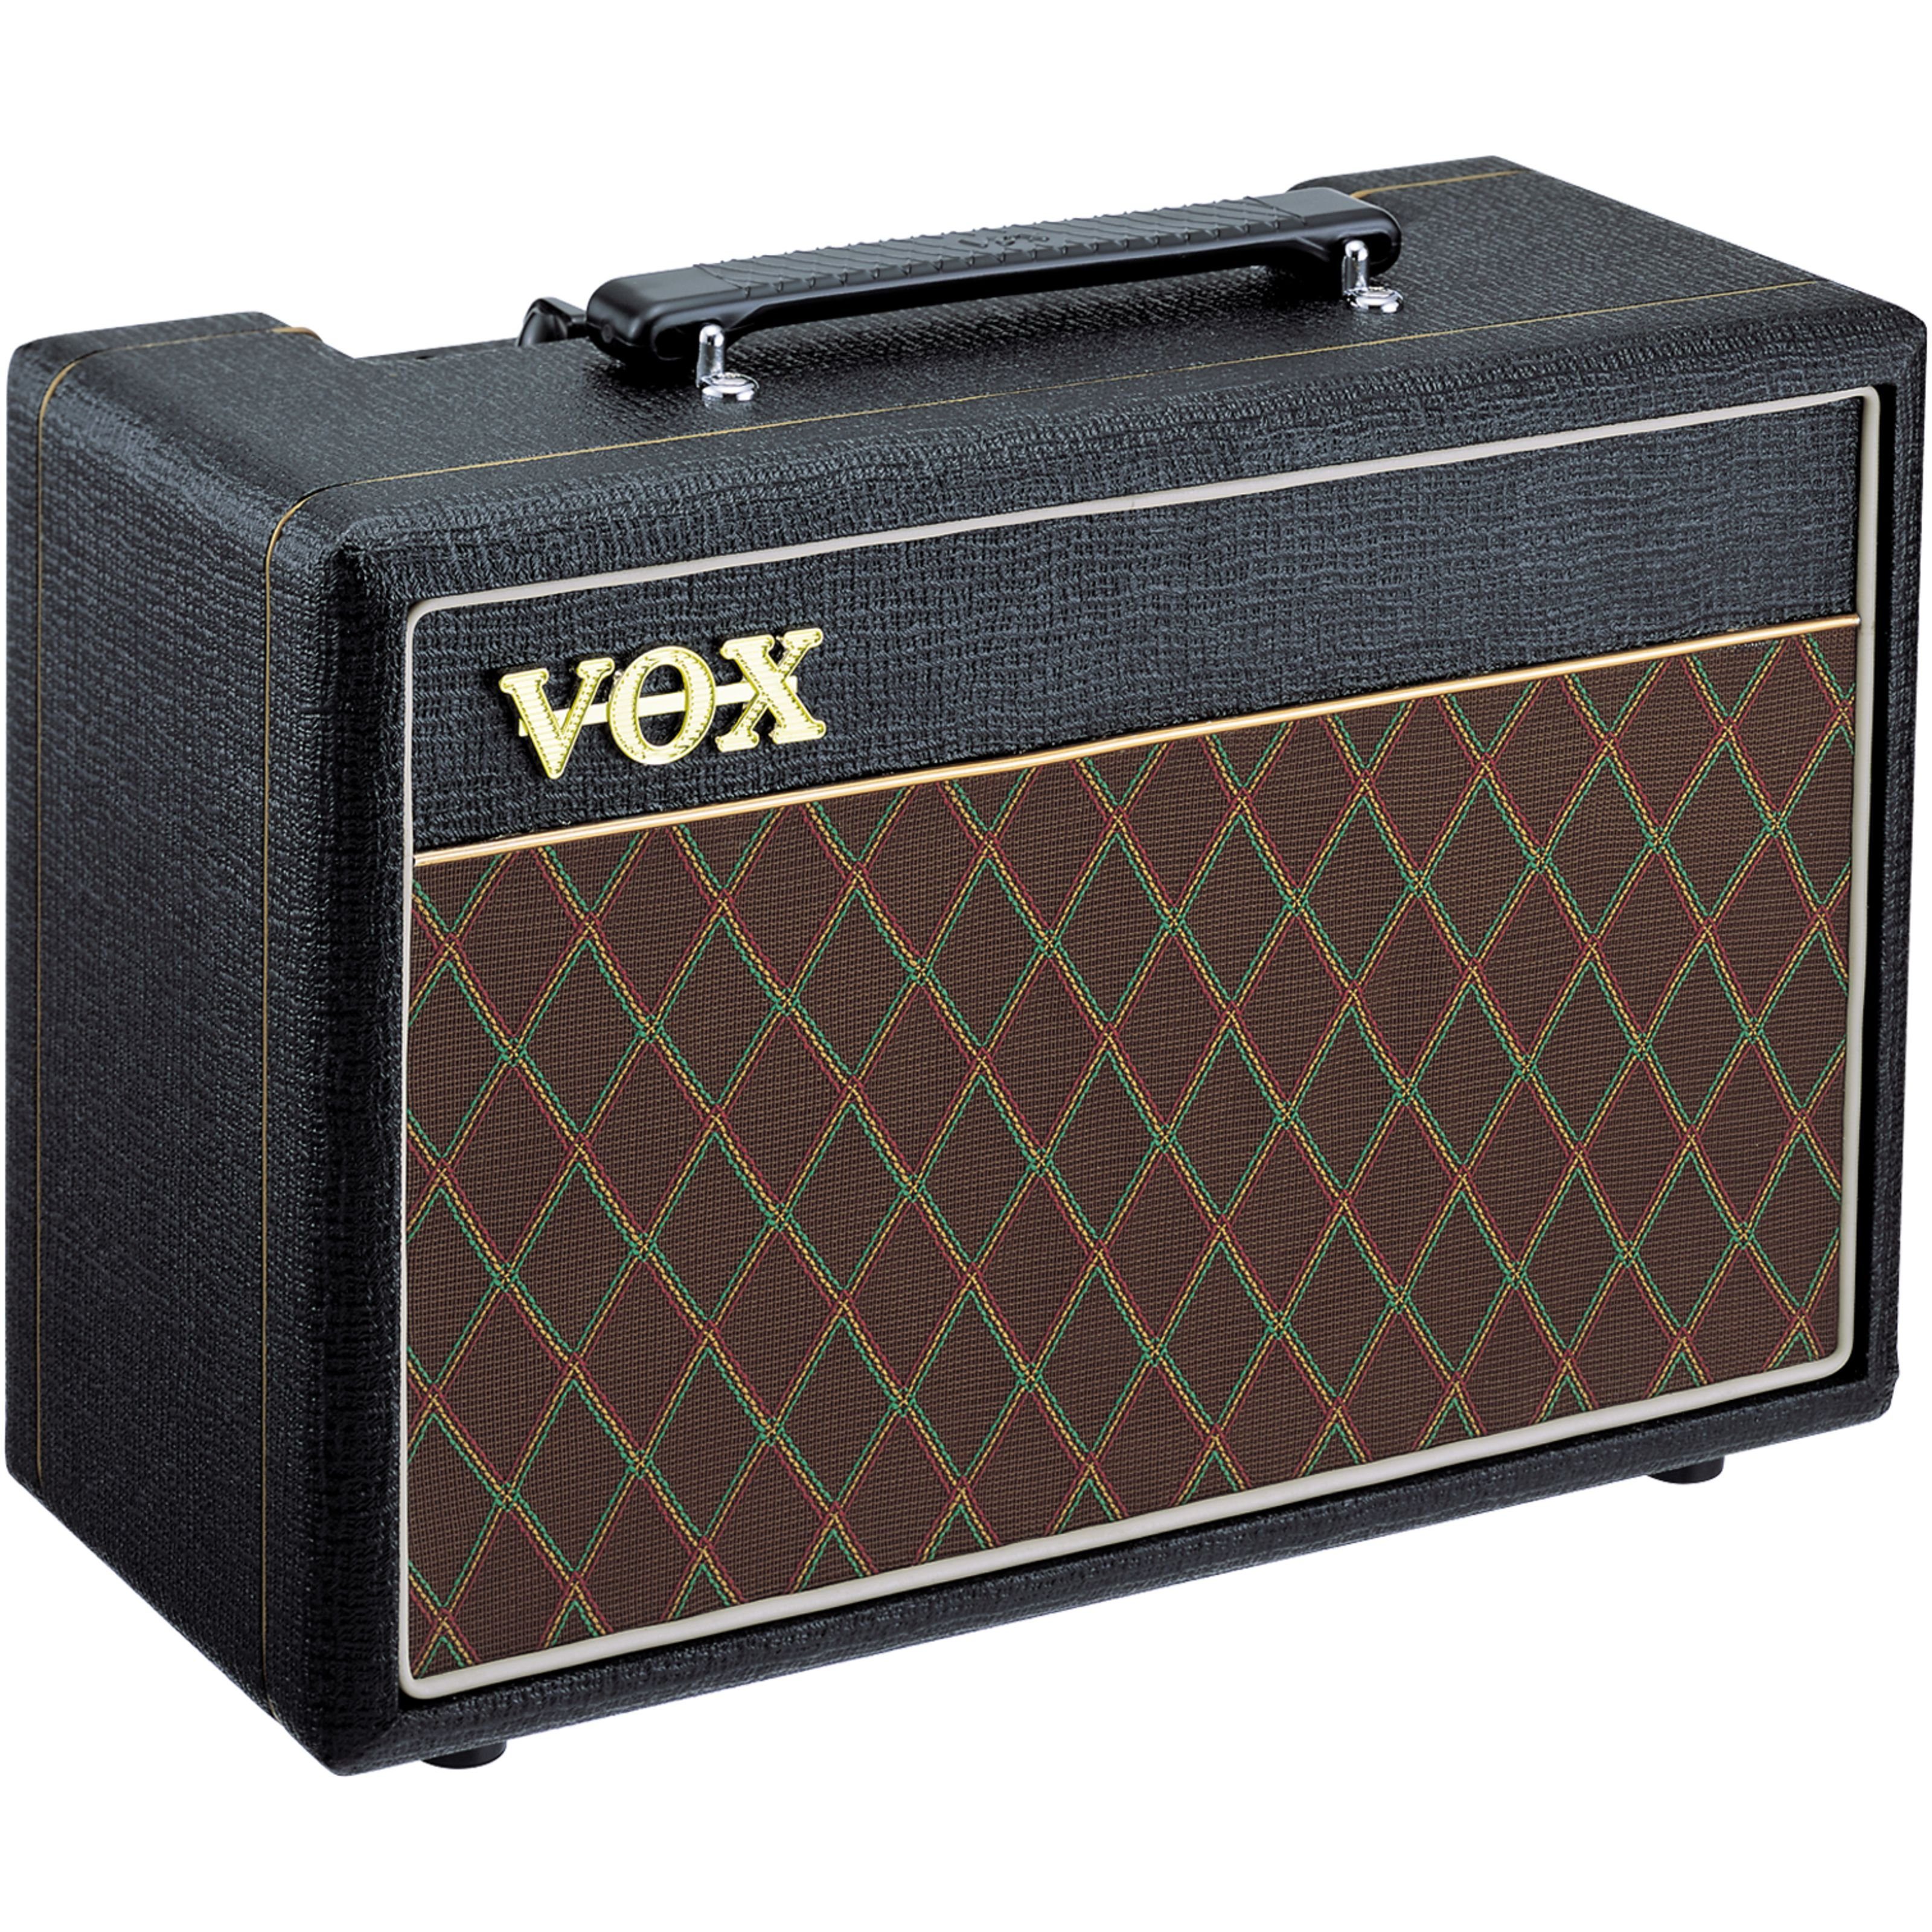 Vox Verstärker (Pathfinder 10 Combo - Transistor Combo Verstärker für E- Gitarre)